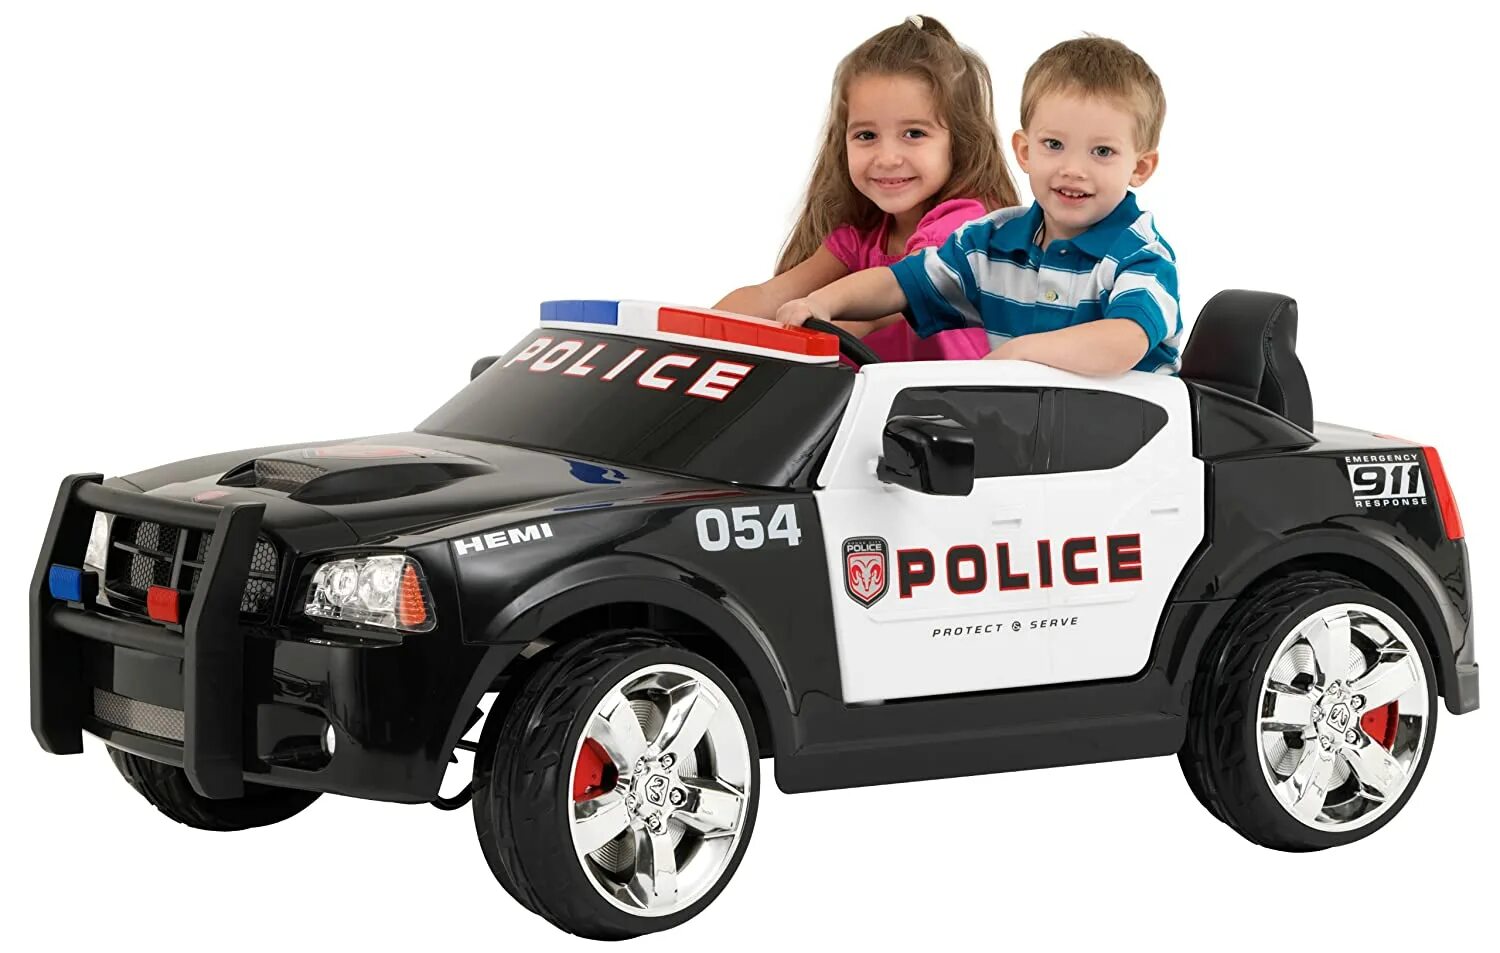 Kids cars автомобиль Police dodge. Kids cars автомобиль Police kt6598. Полицейский Додж Чарджер электромобиль. Электромобиль dodge Police xh666. Хотел машинку включить